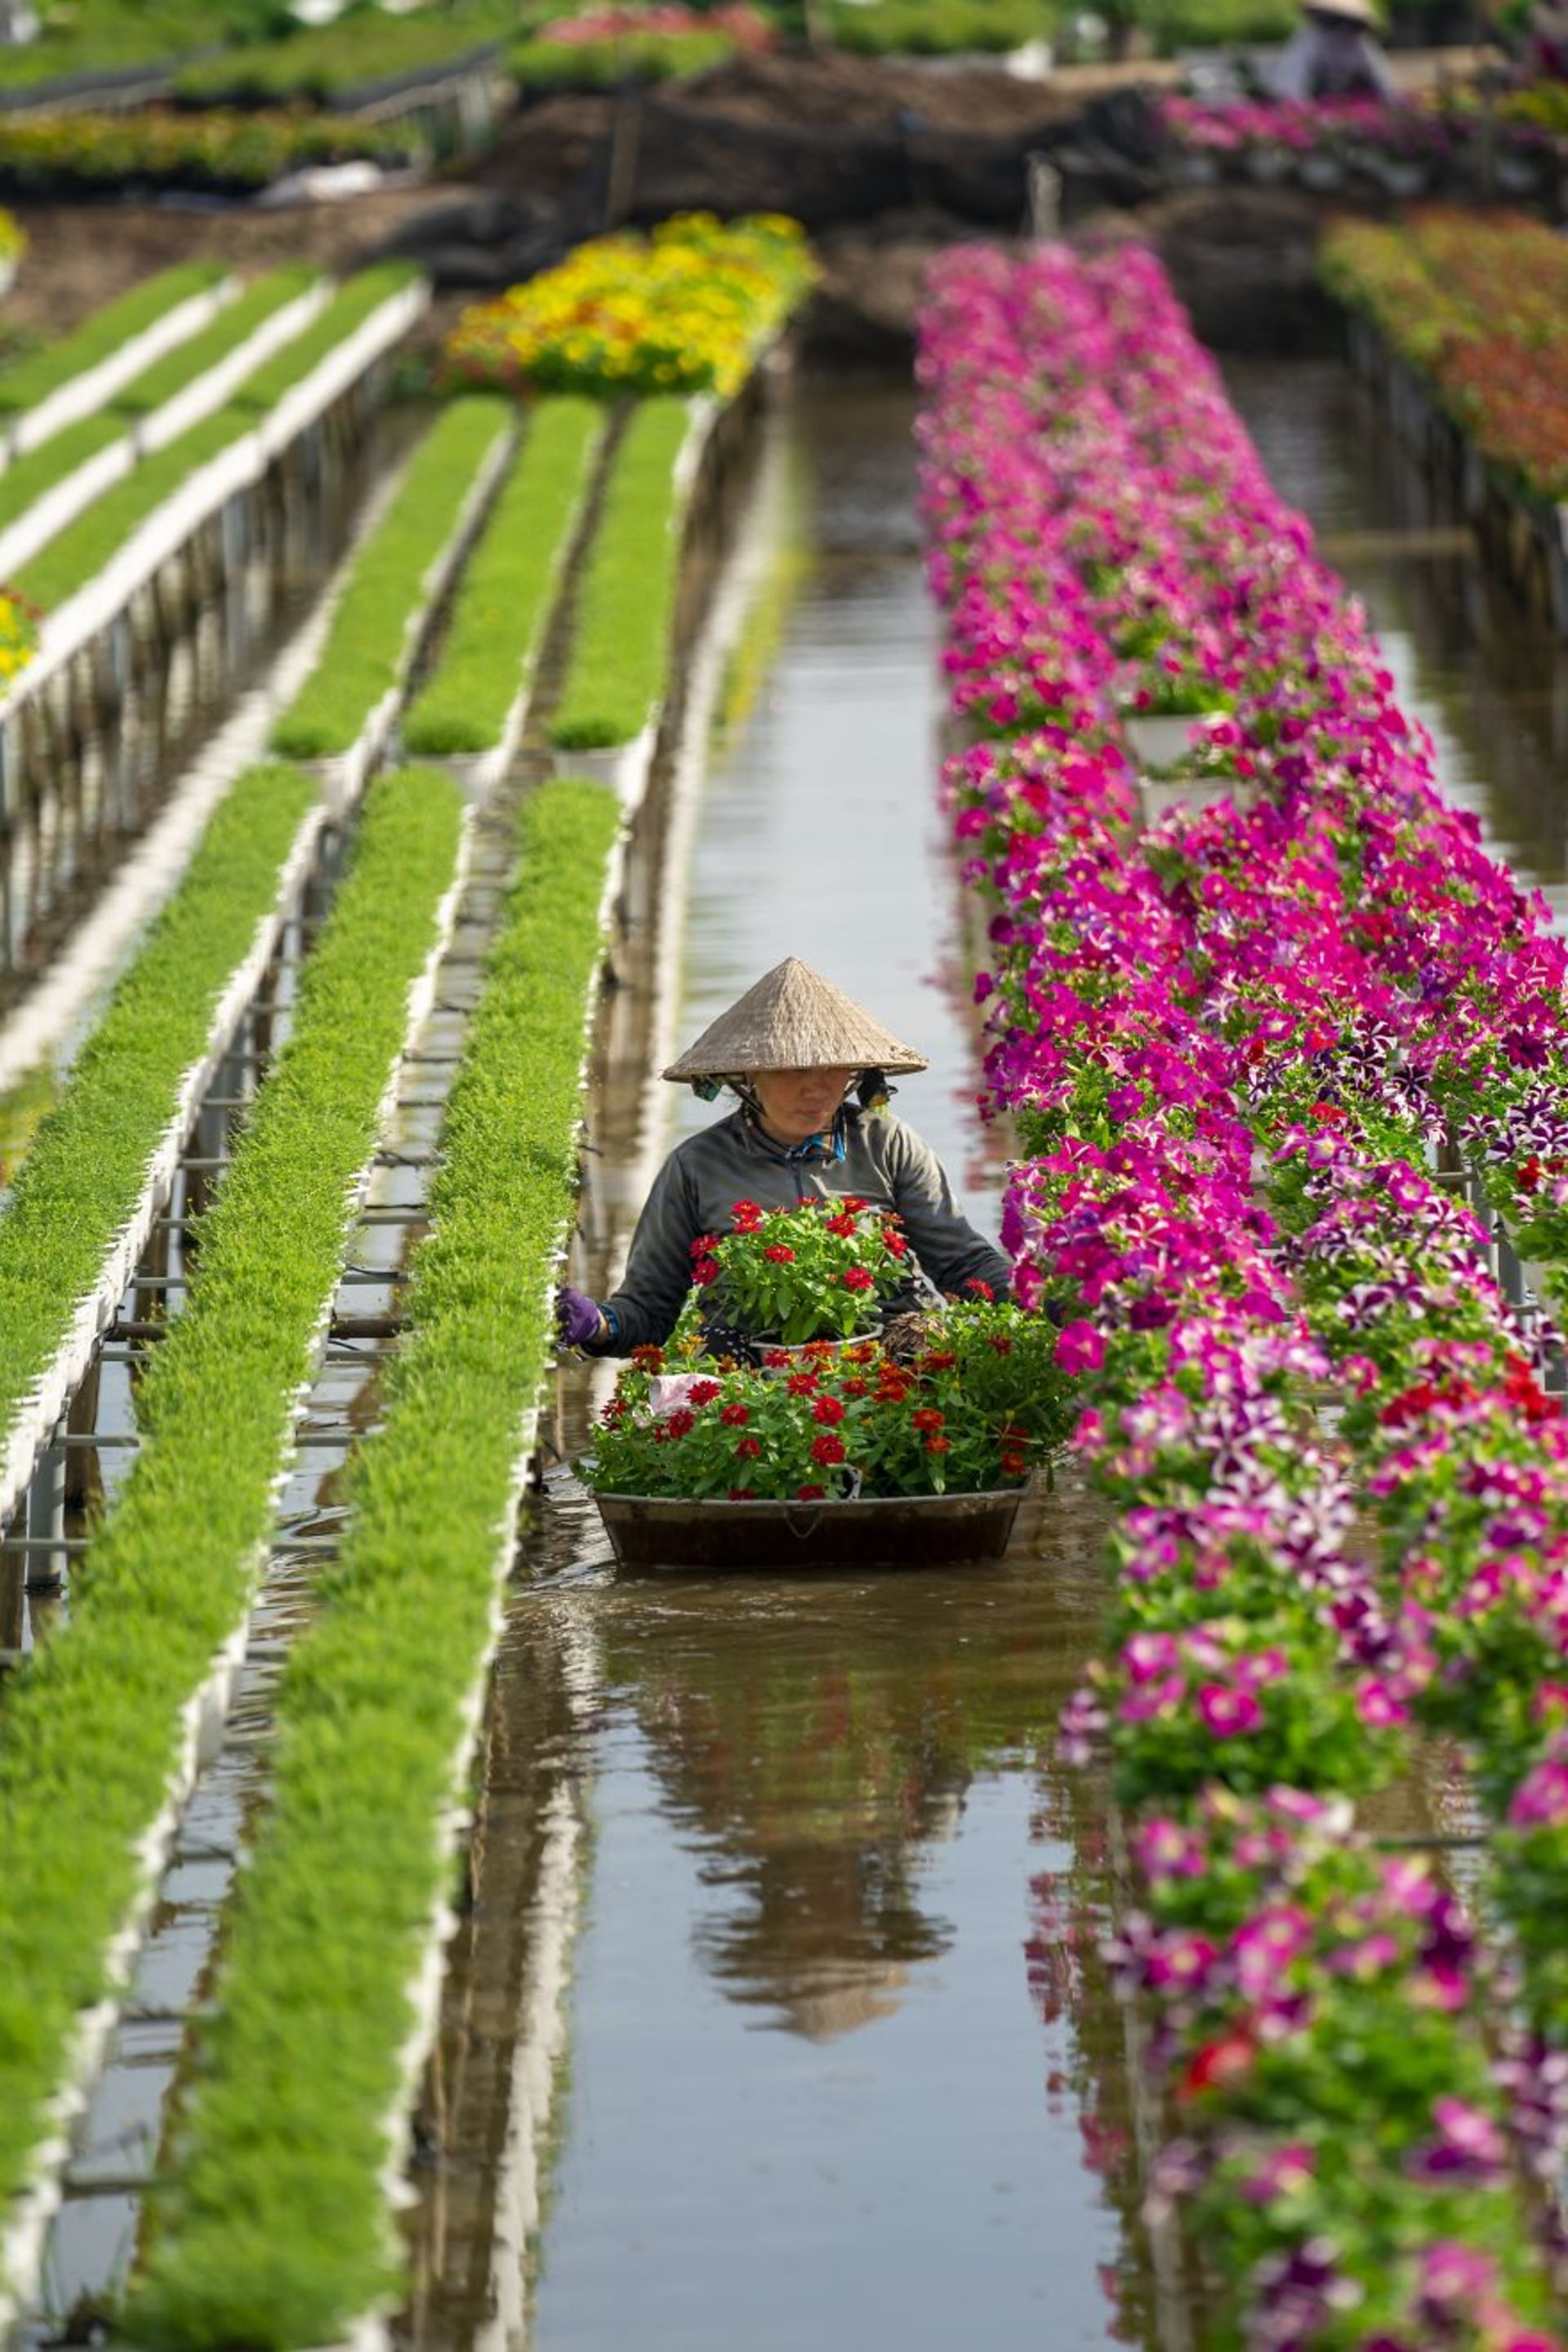 کارگر در حال رسیدگی به گل ها